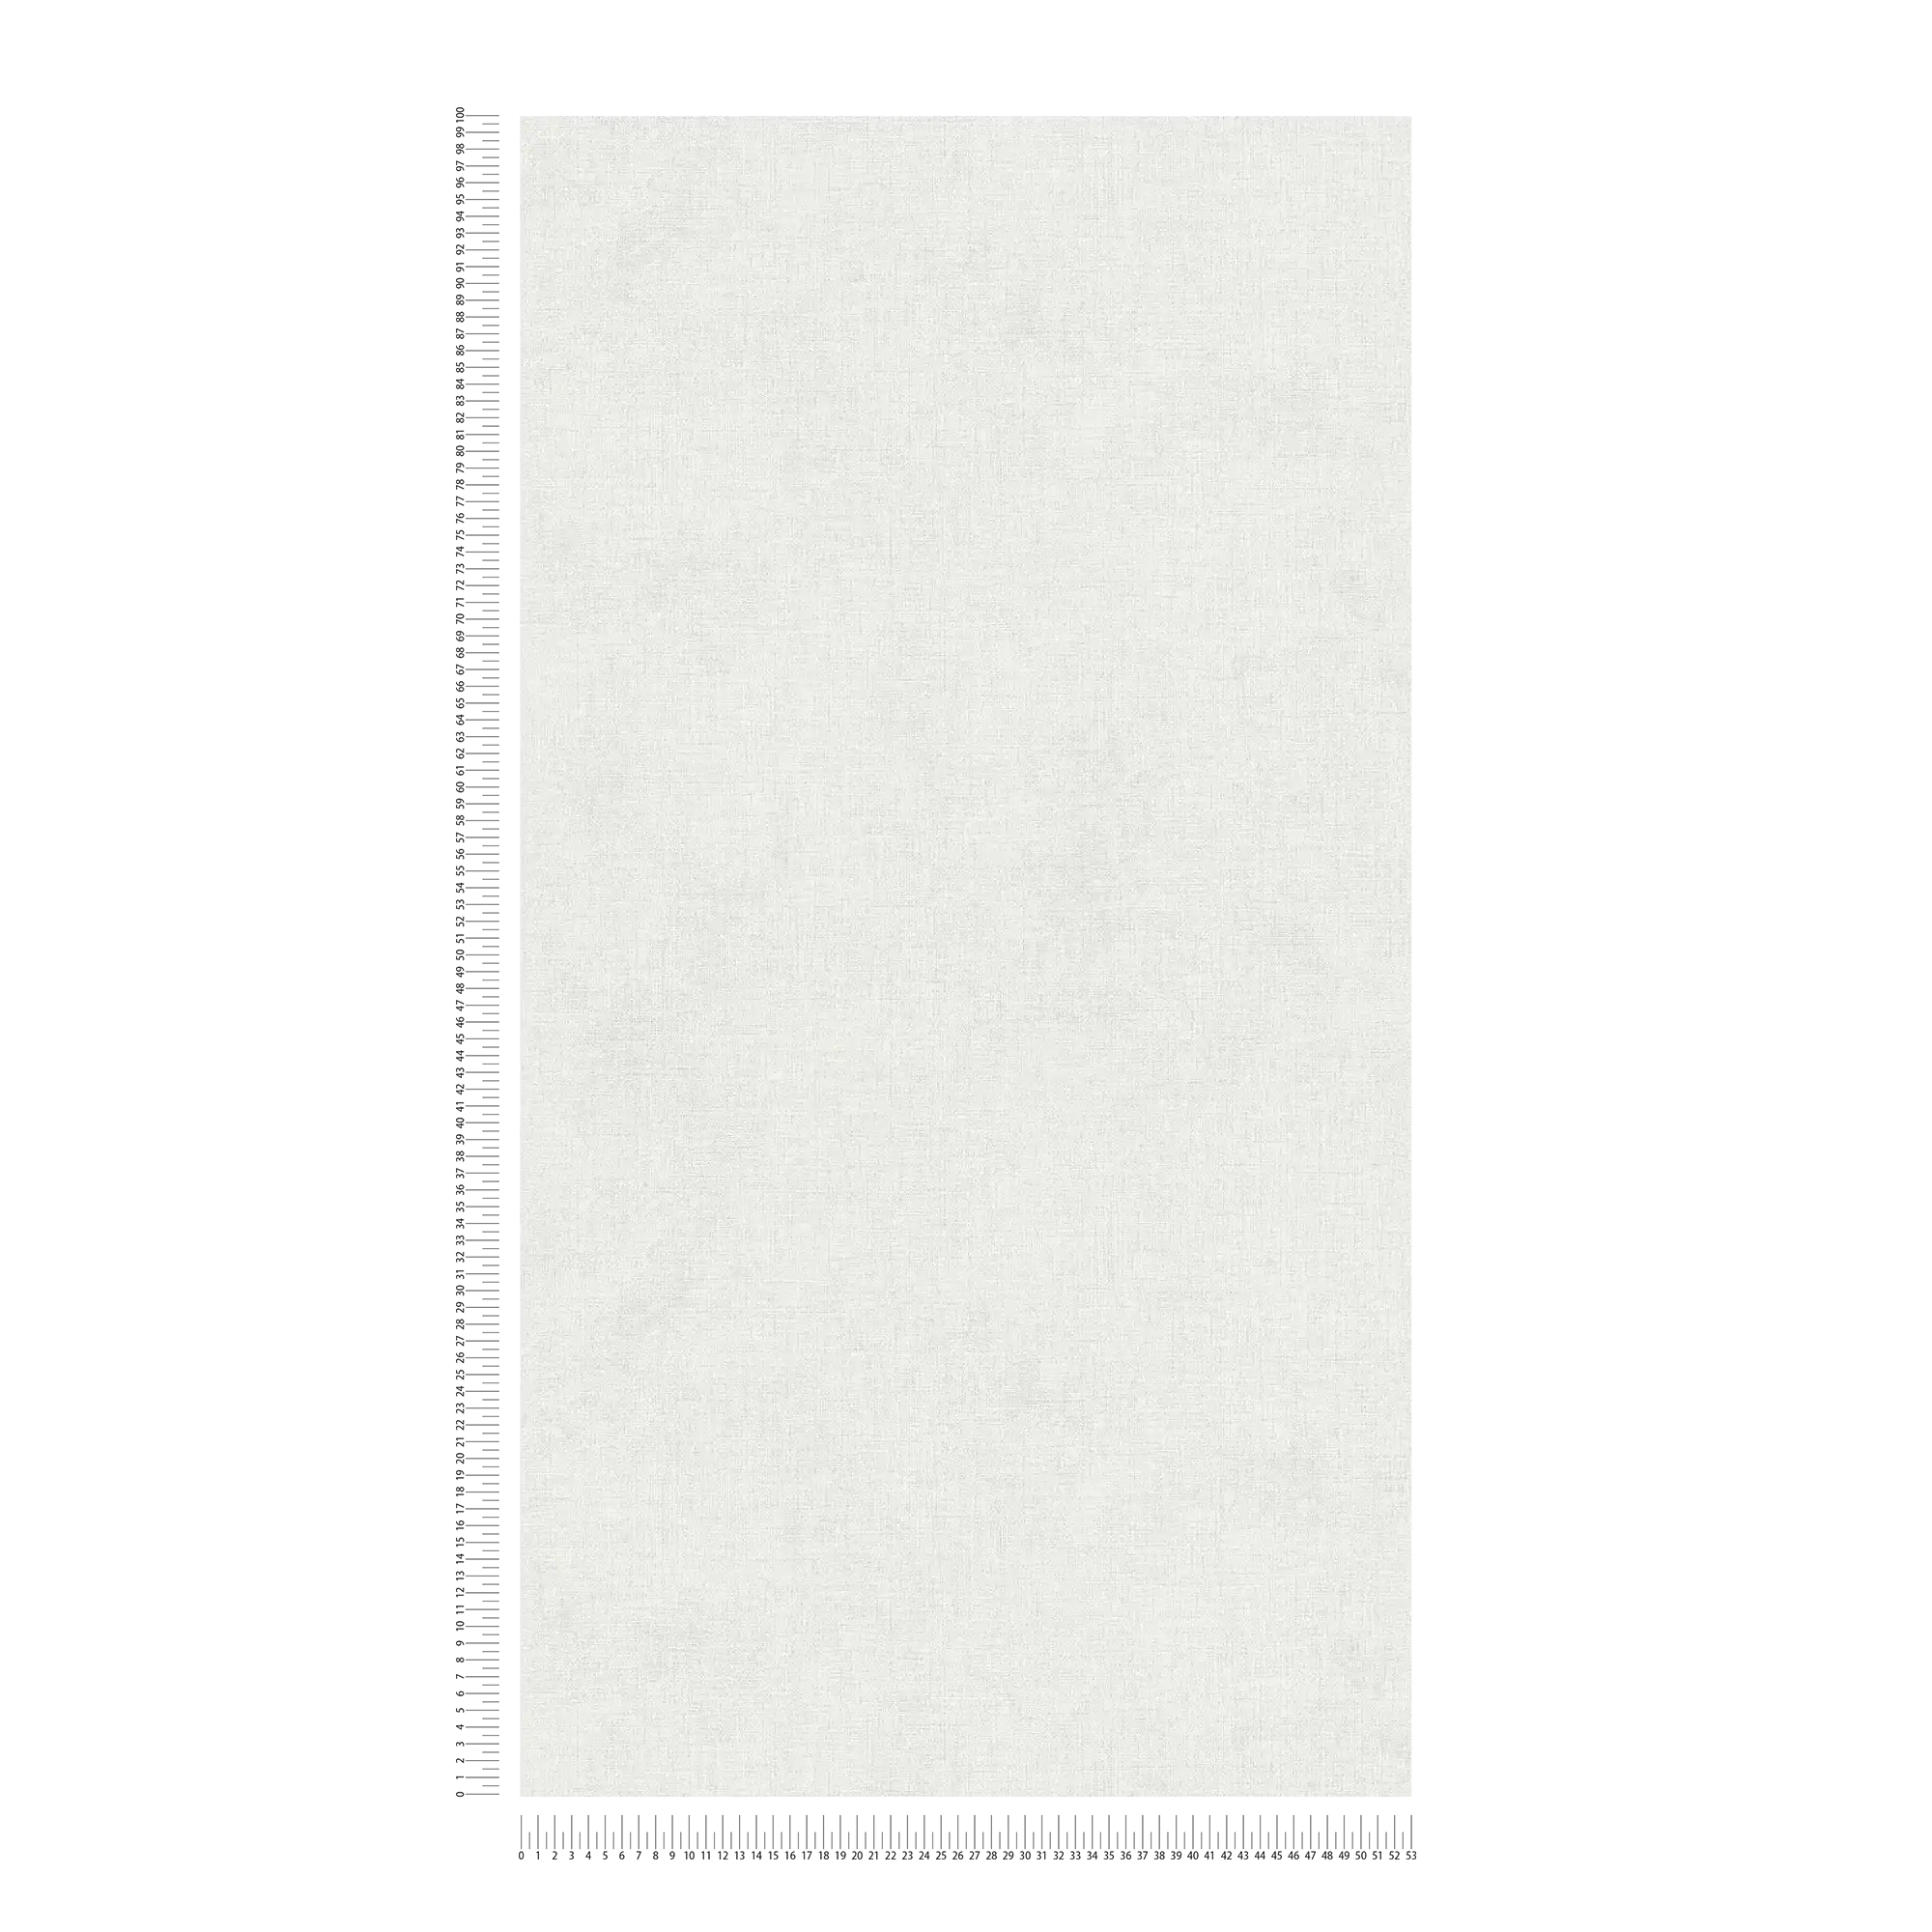             papier peint imitation lin uni, neutre - gris clair
        